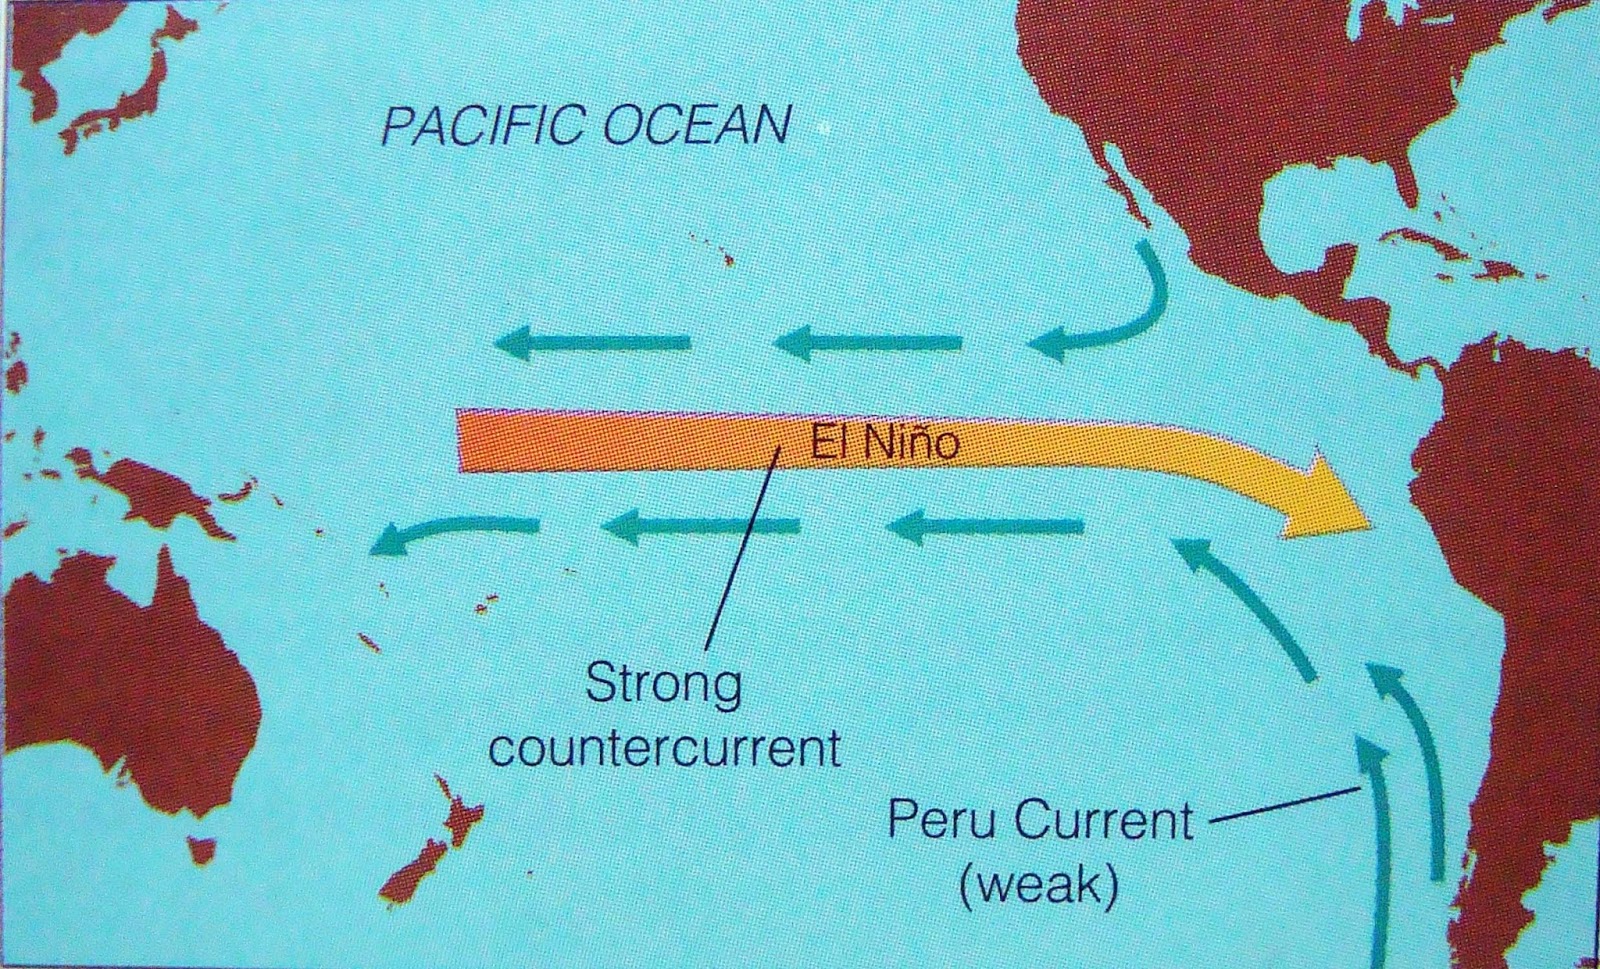 Перуанское течение является. Направление течения Эль Ниньо. Направление течения Эль Ниньо в Южной Америке. Эль Ниньо перуанское течение. Течение в тихом океане Эль-Ниньо.